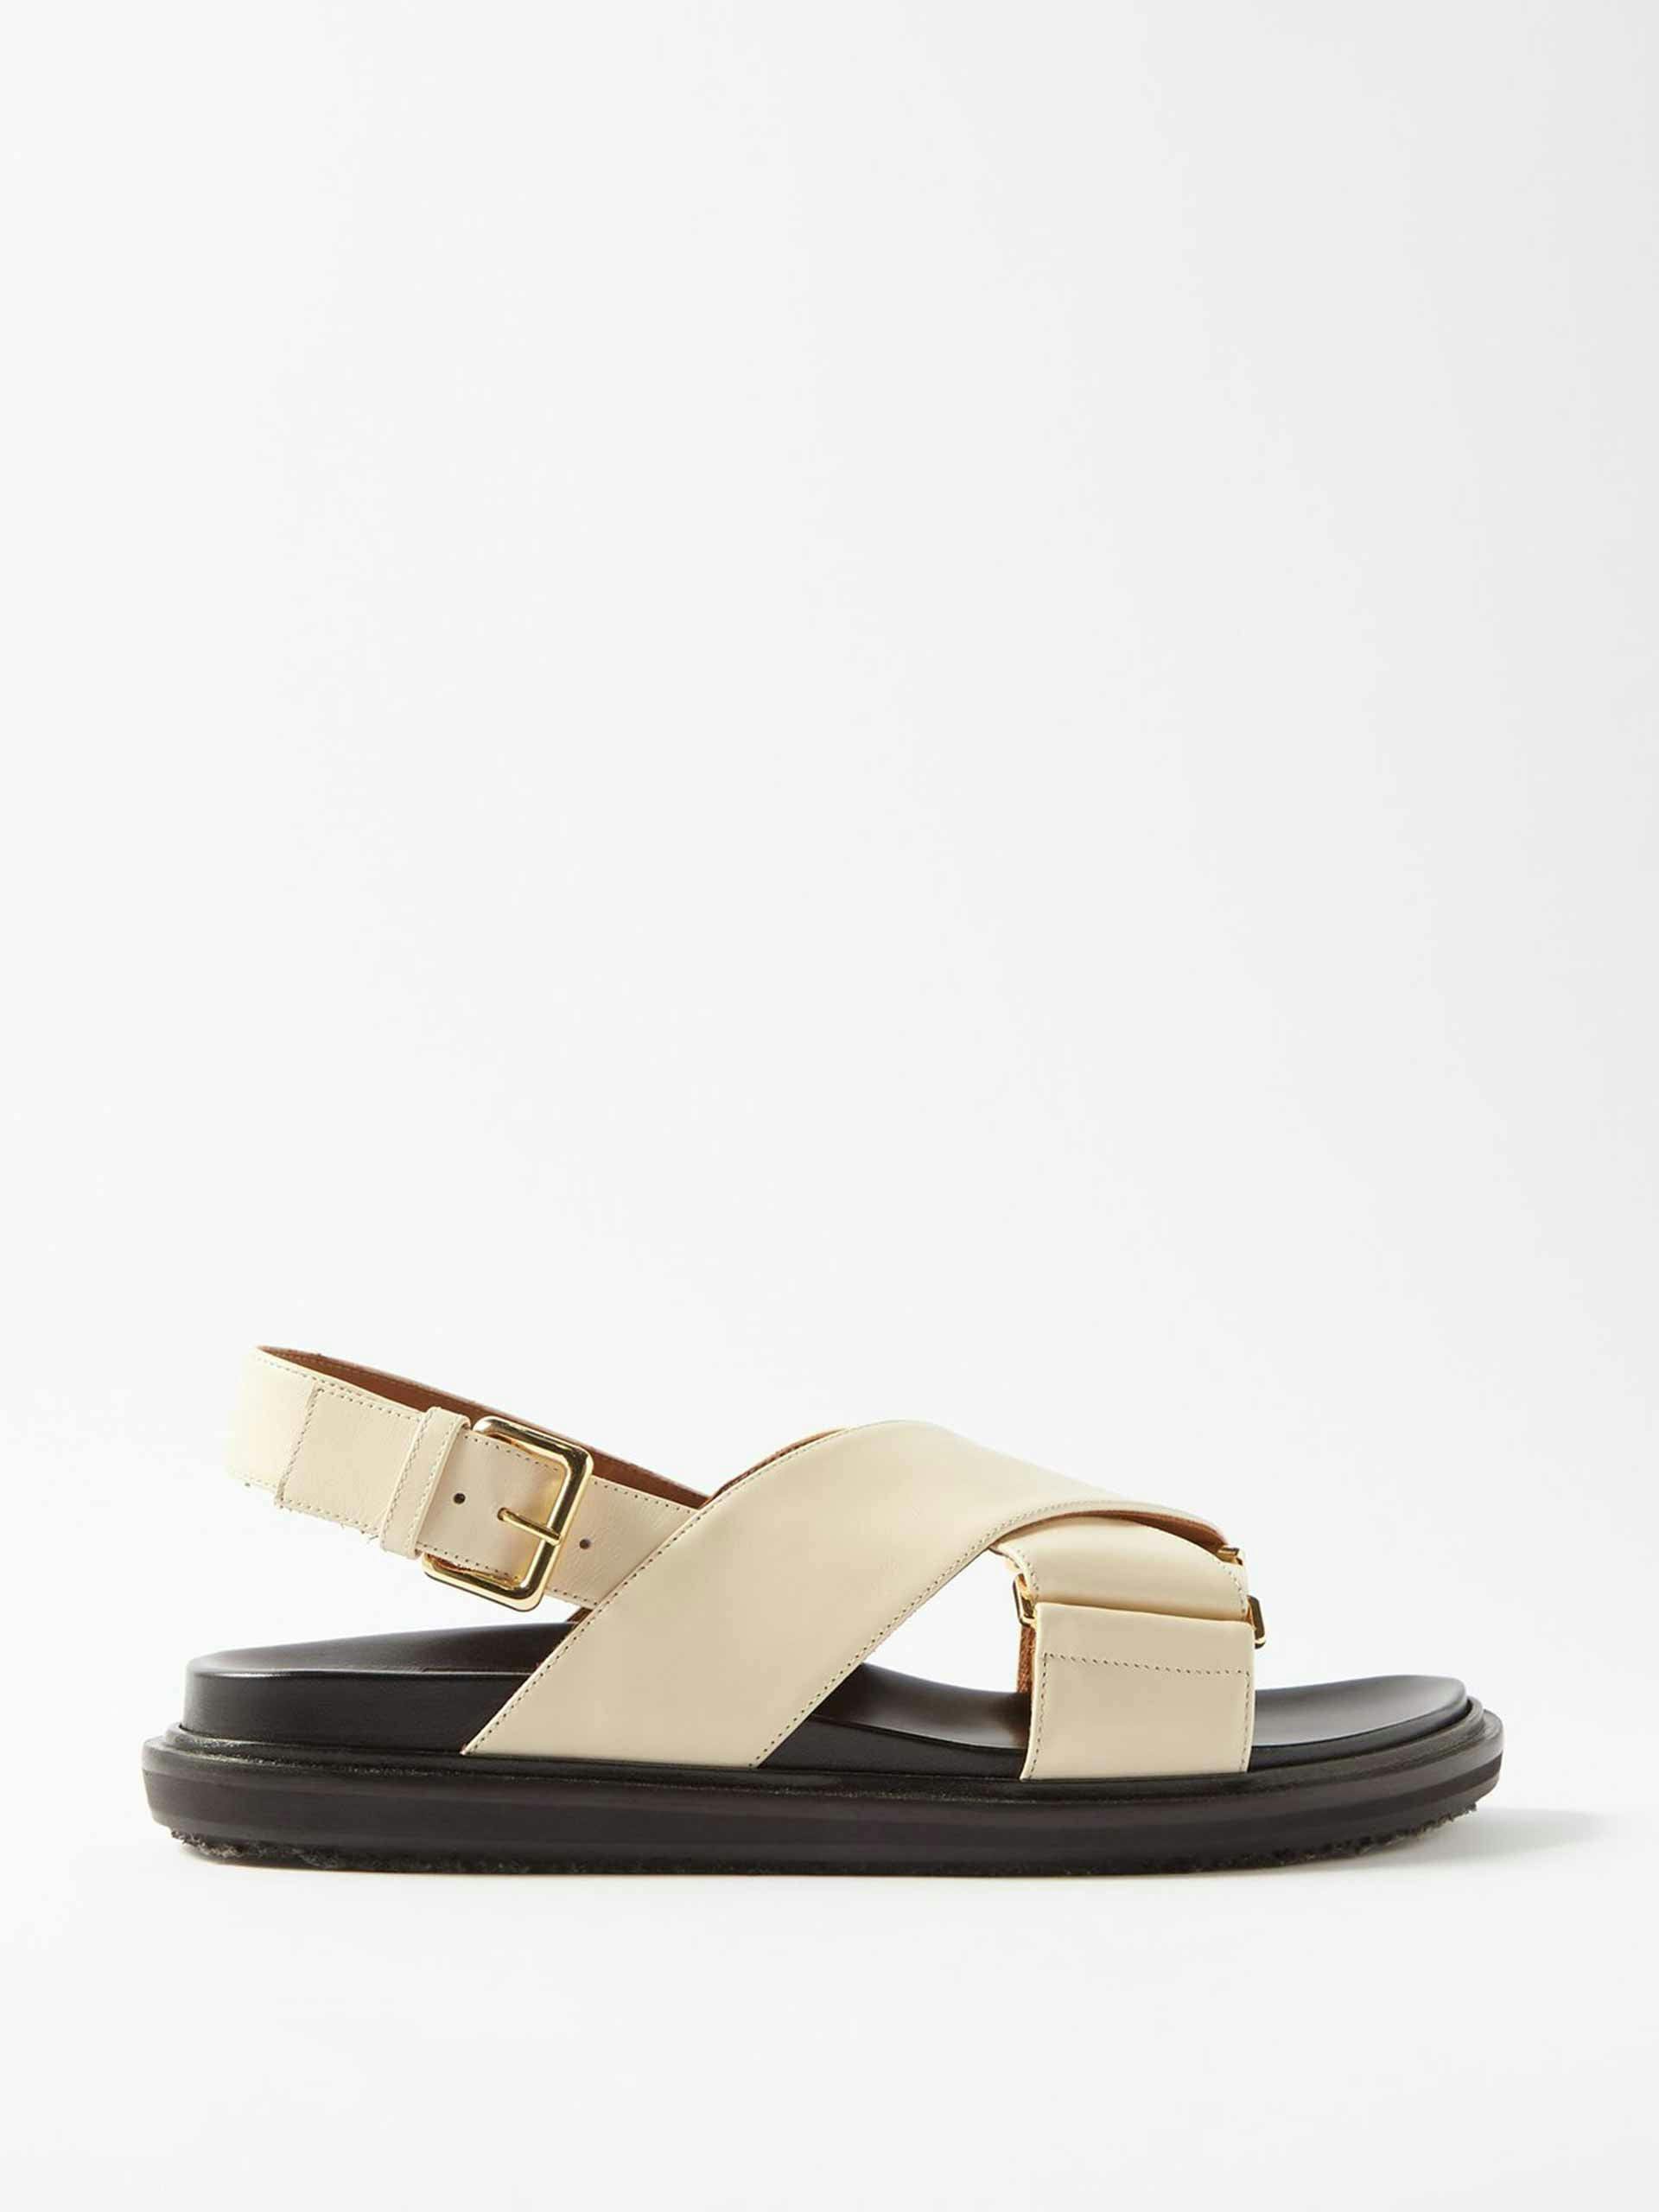 Cream leather sandals